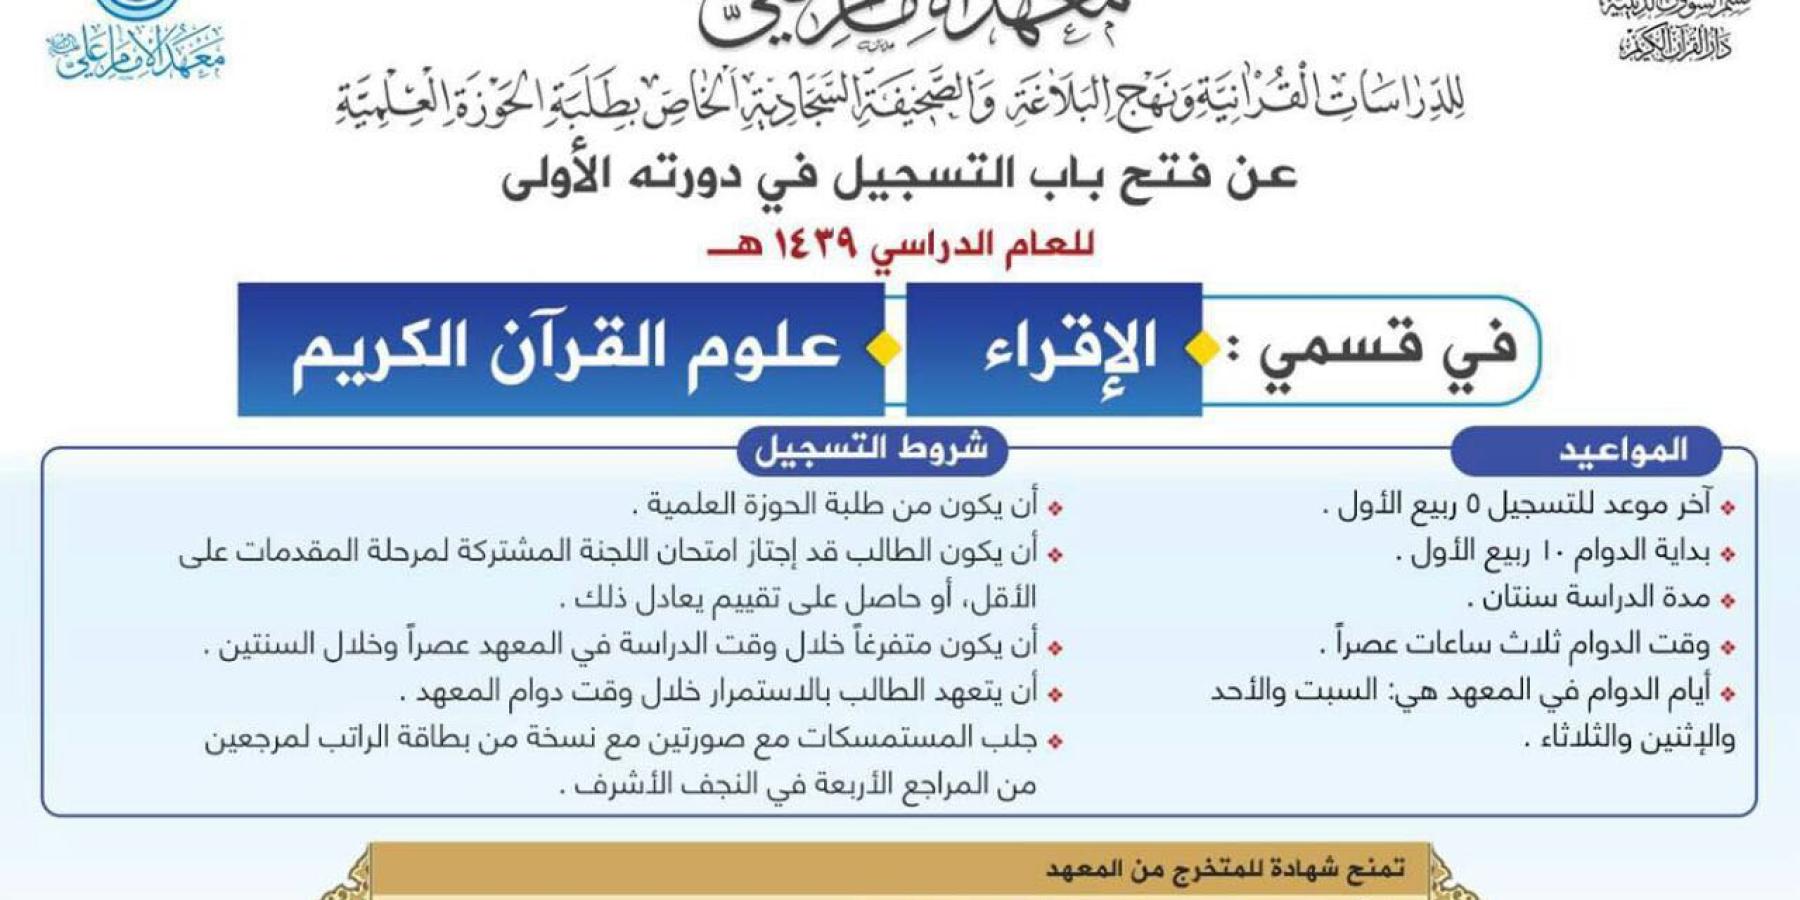 معهد الأمام علي(عليه السلام) للدراسات القرآنية يعلن عن فتح باب التسجيل في الدورة الأولى للعام 2018